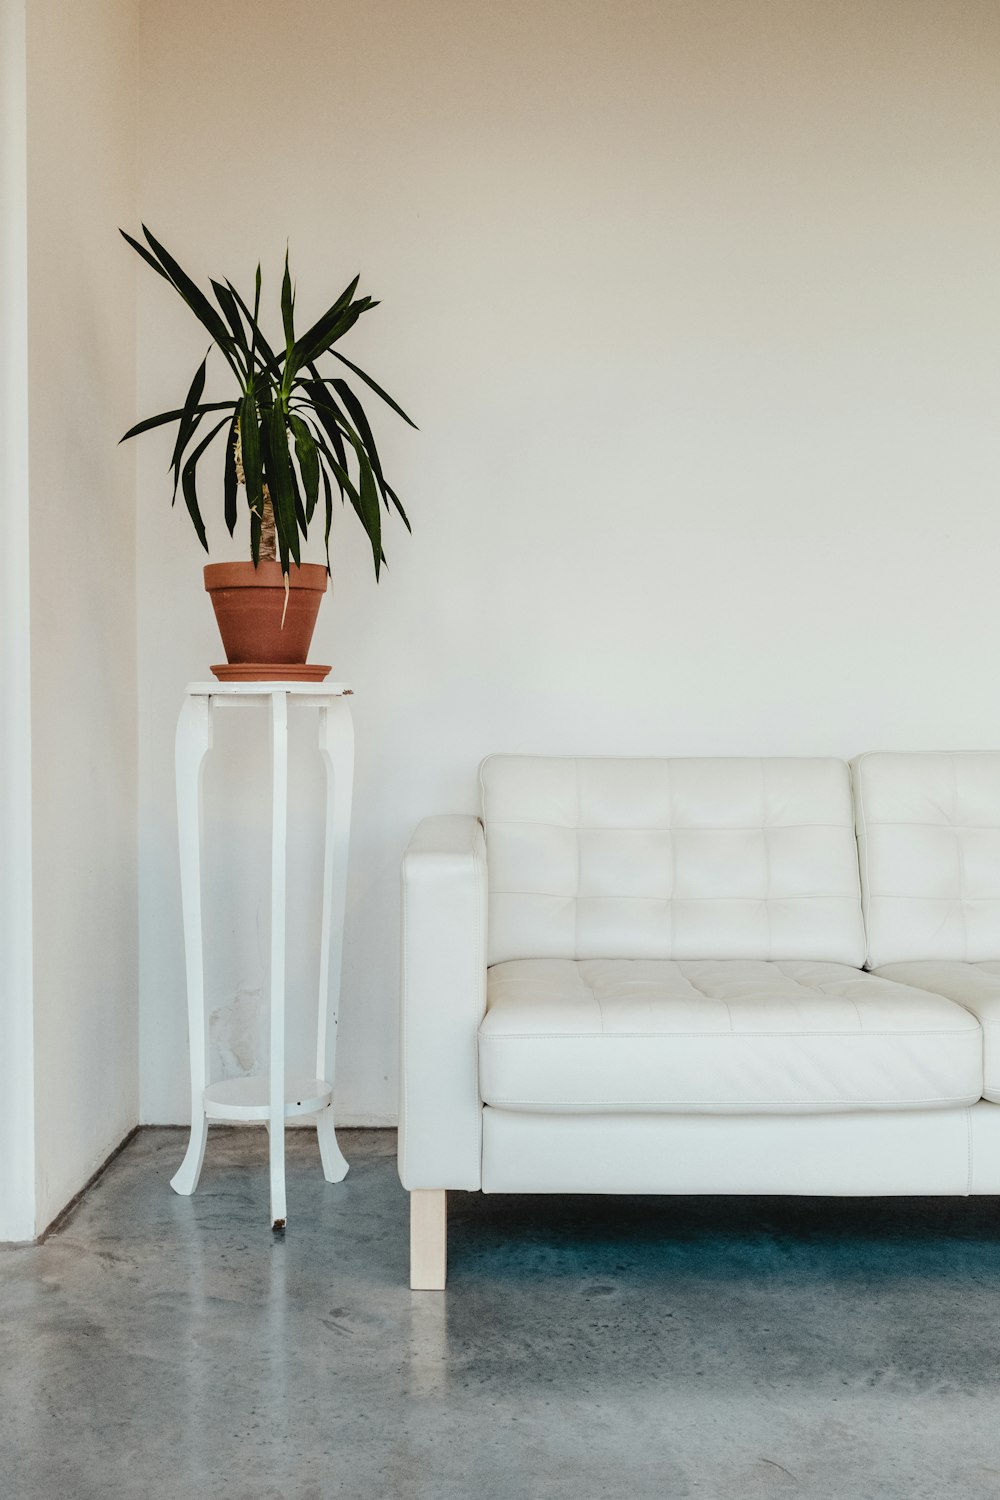 Foto zum Thema Leeres graues Sofa und Nackenkissen – Kostenloses Bild zu  Braun auf Unsplash